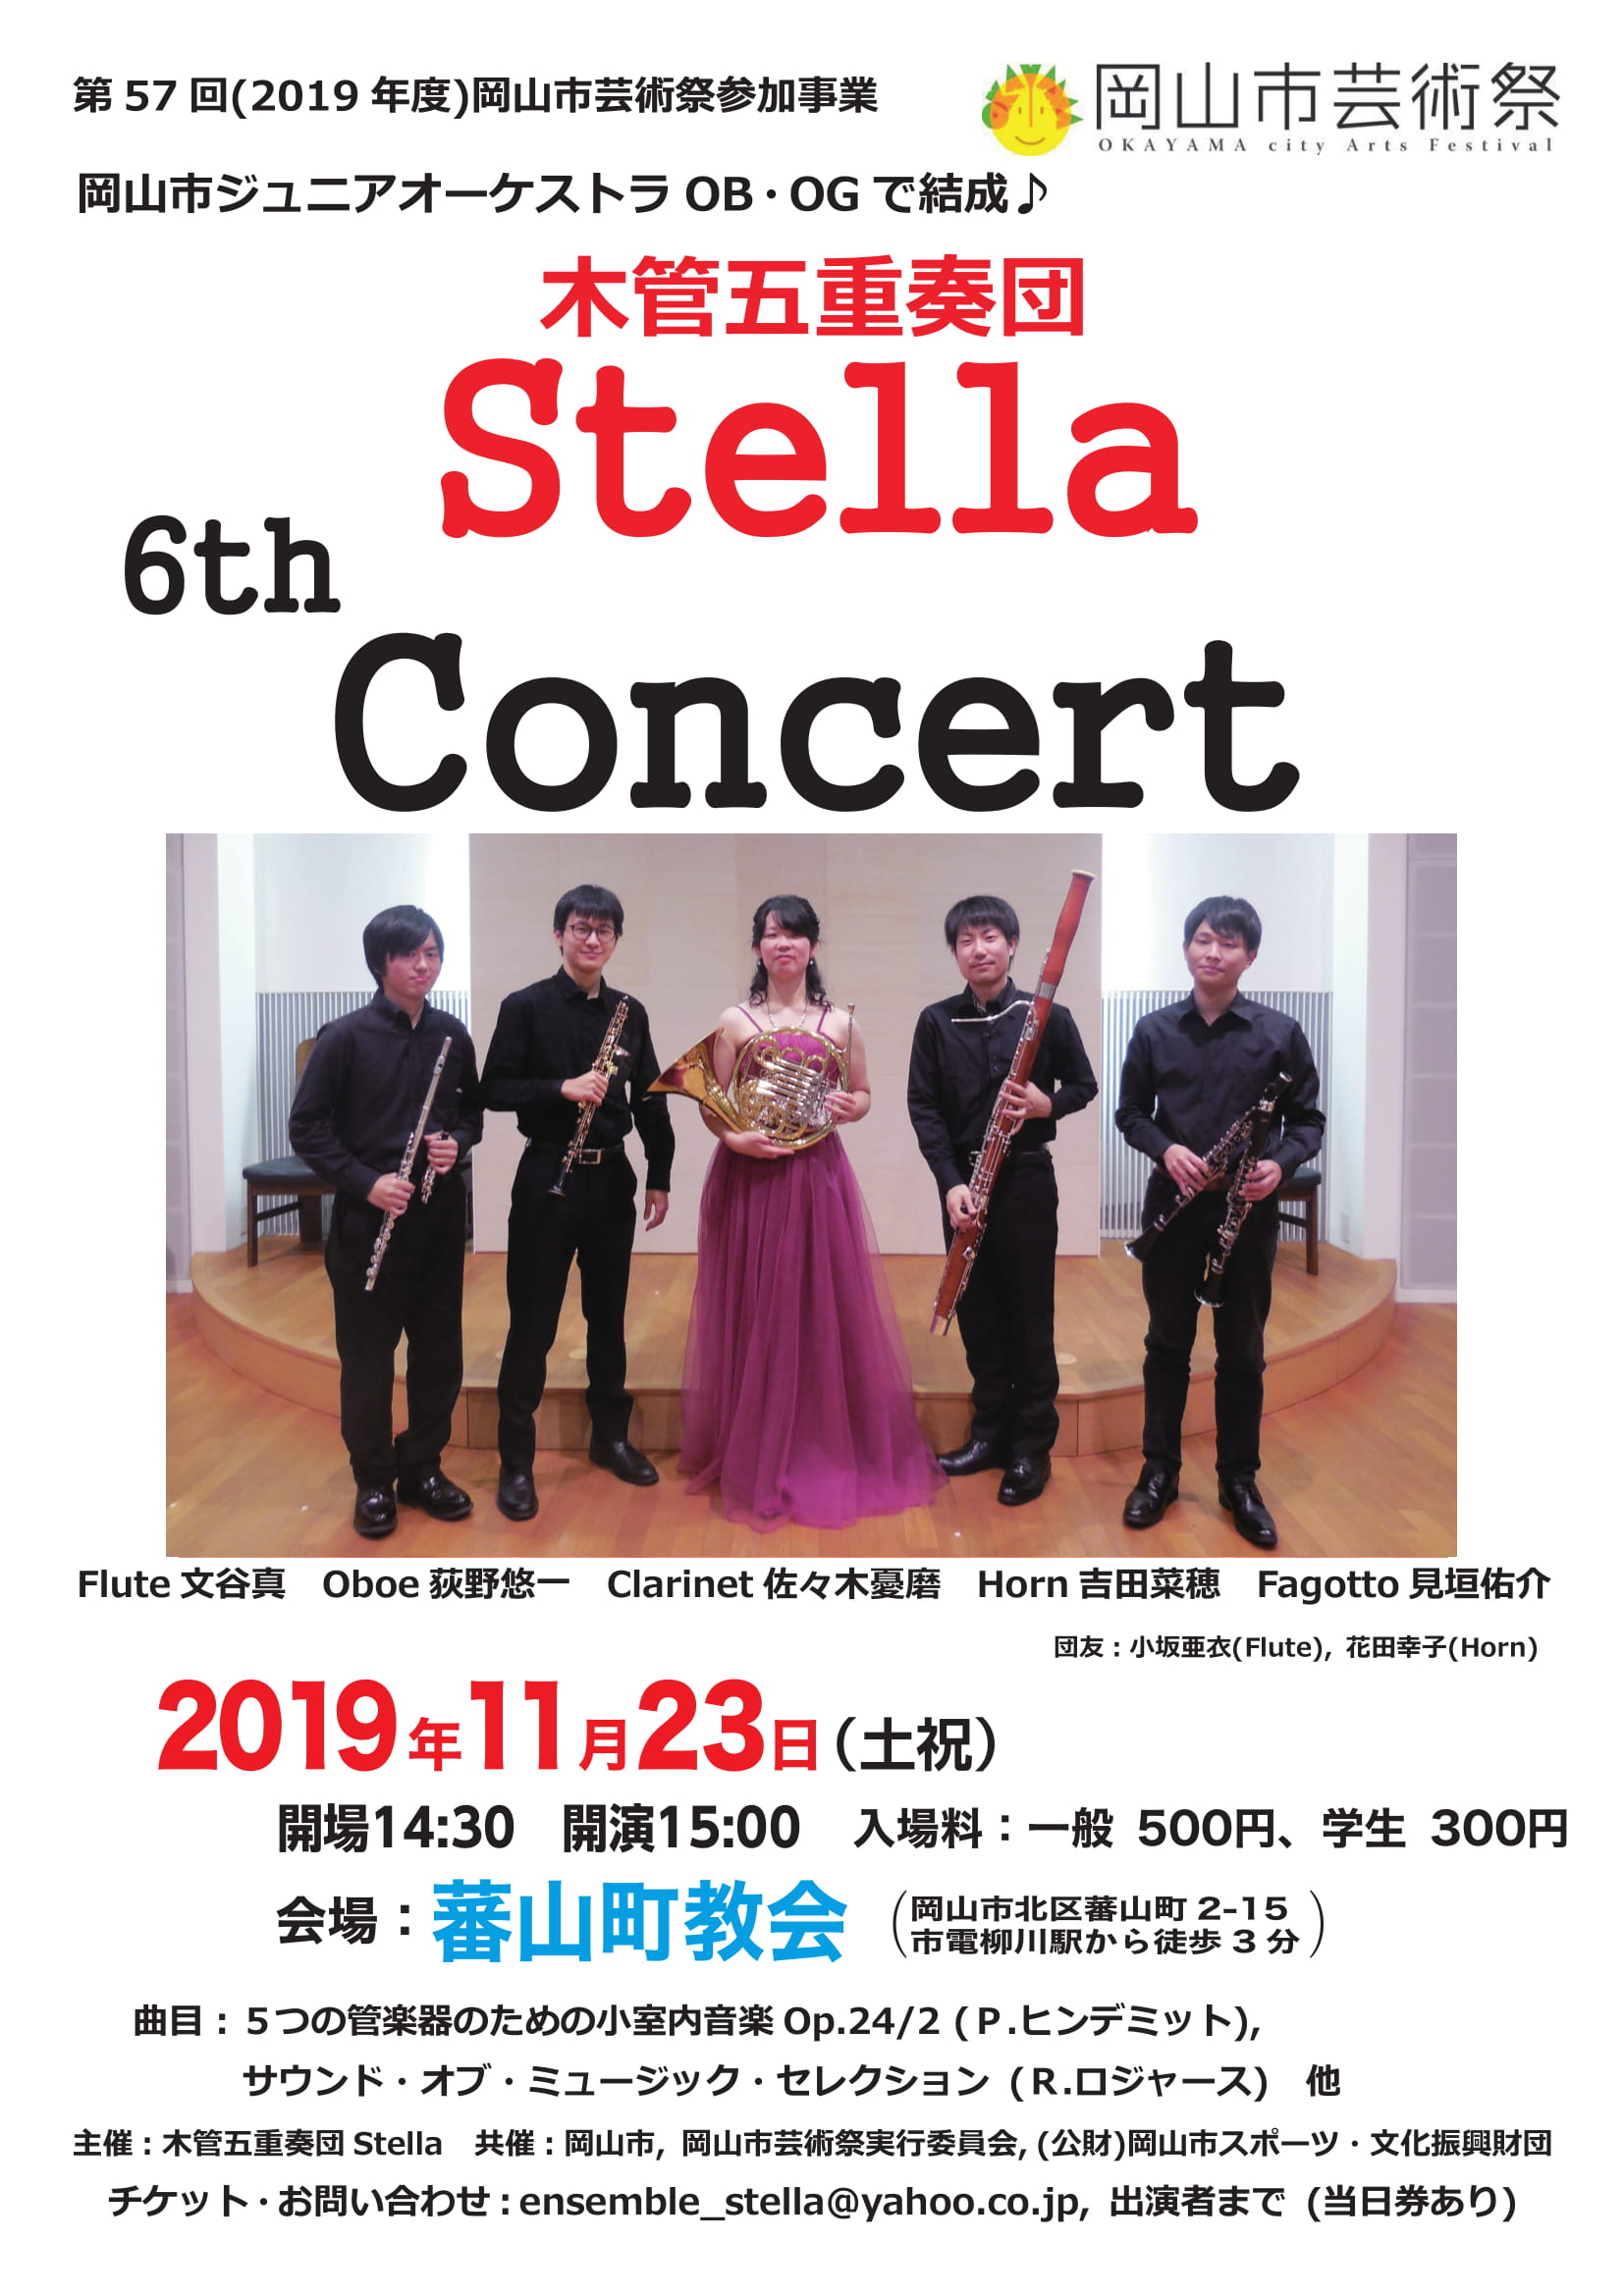 木管五重奏団Stella